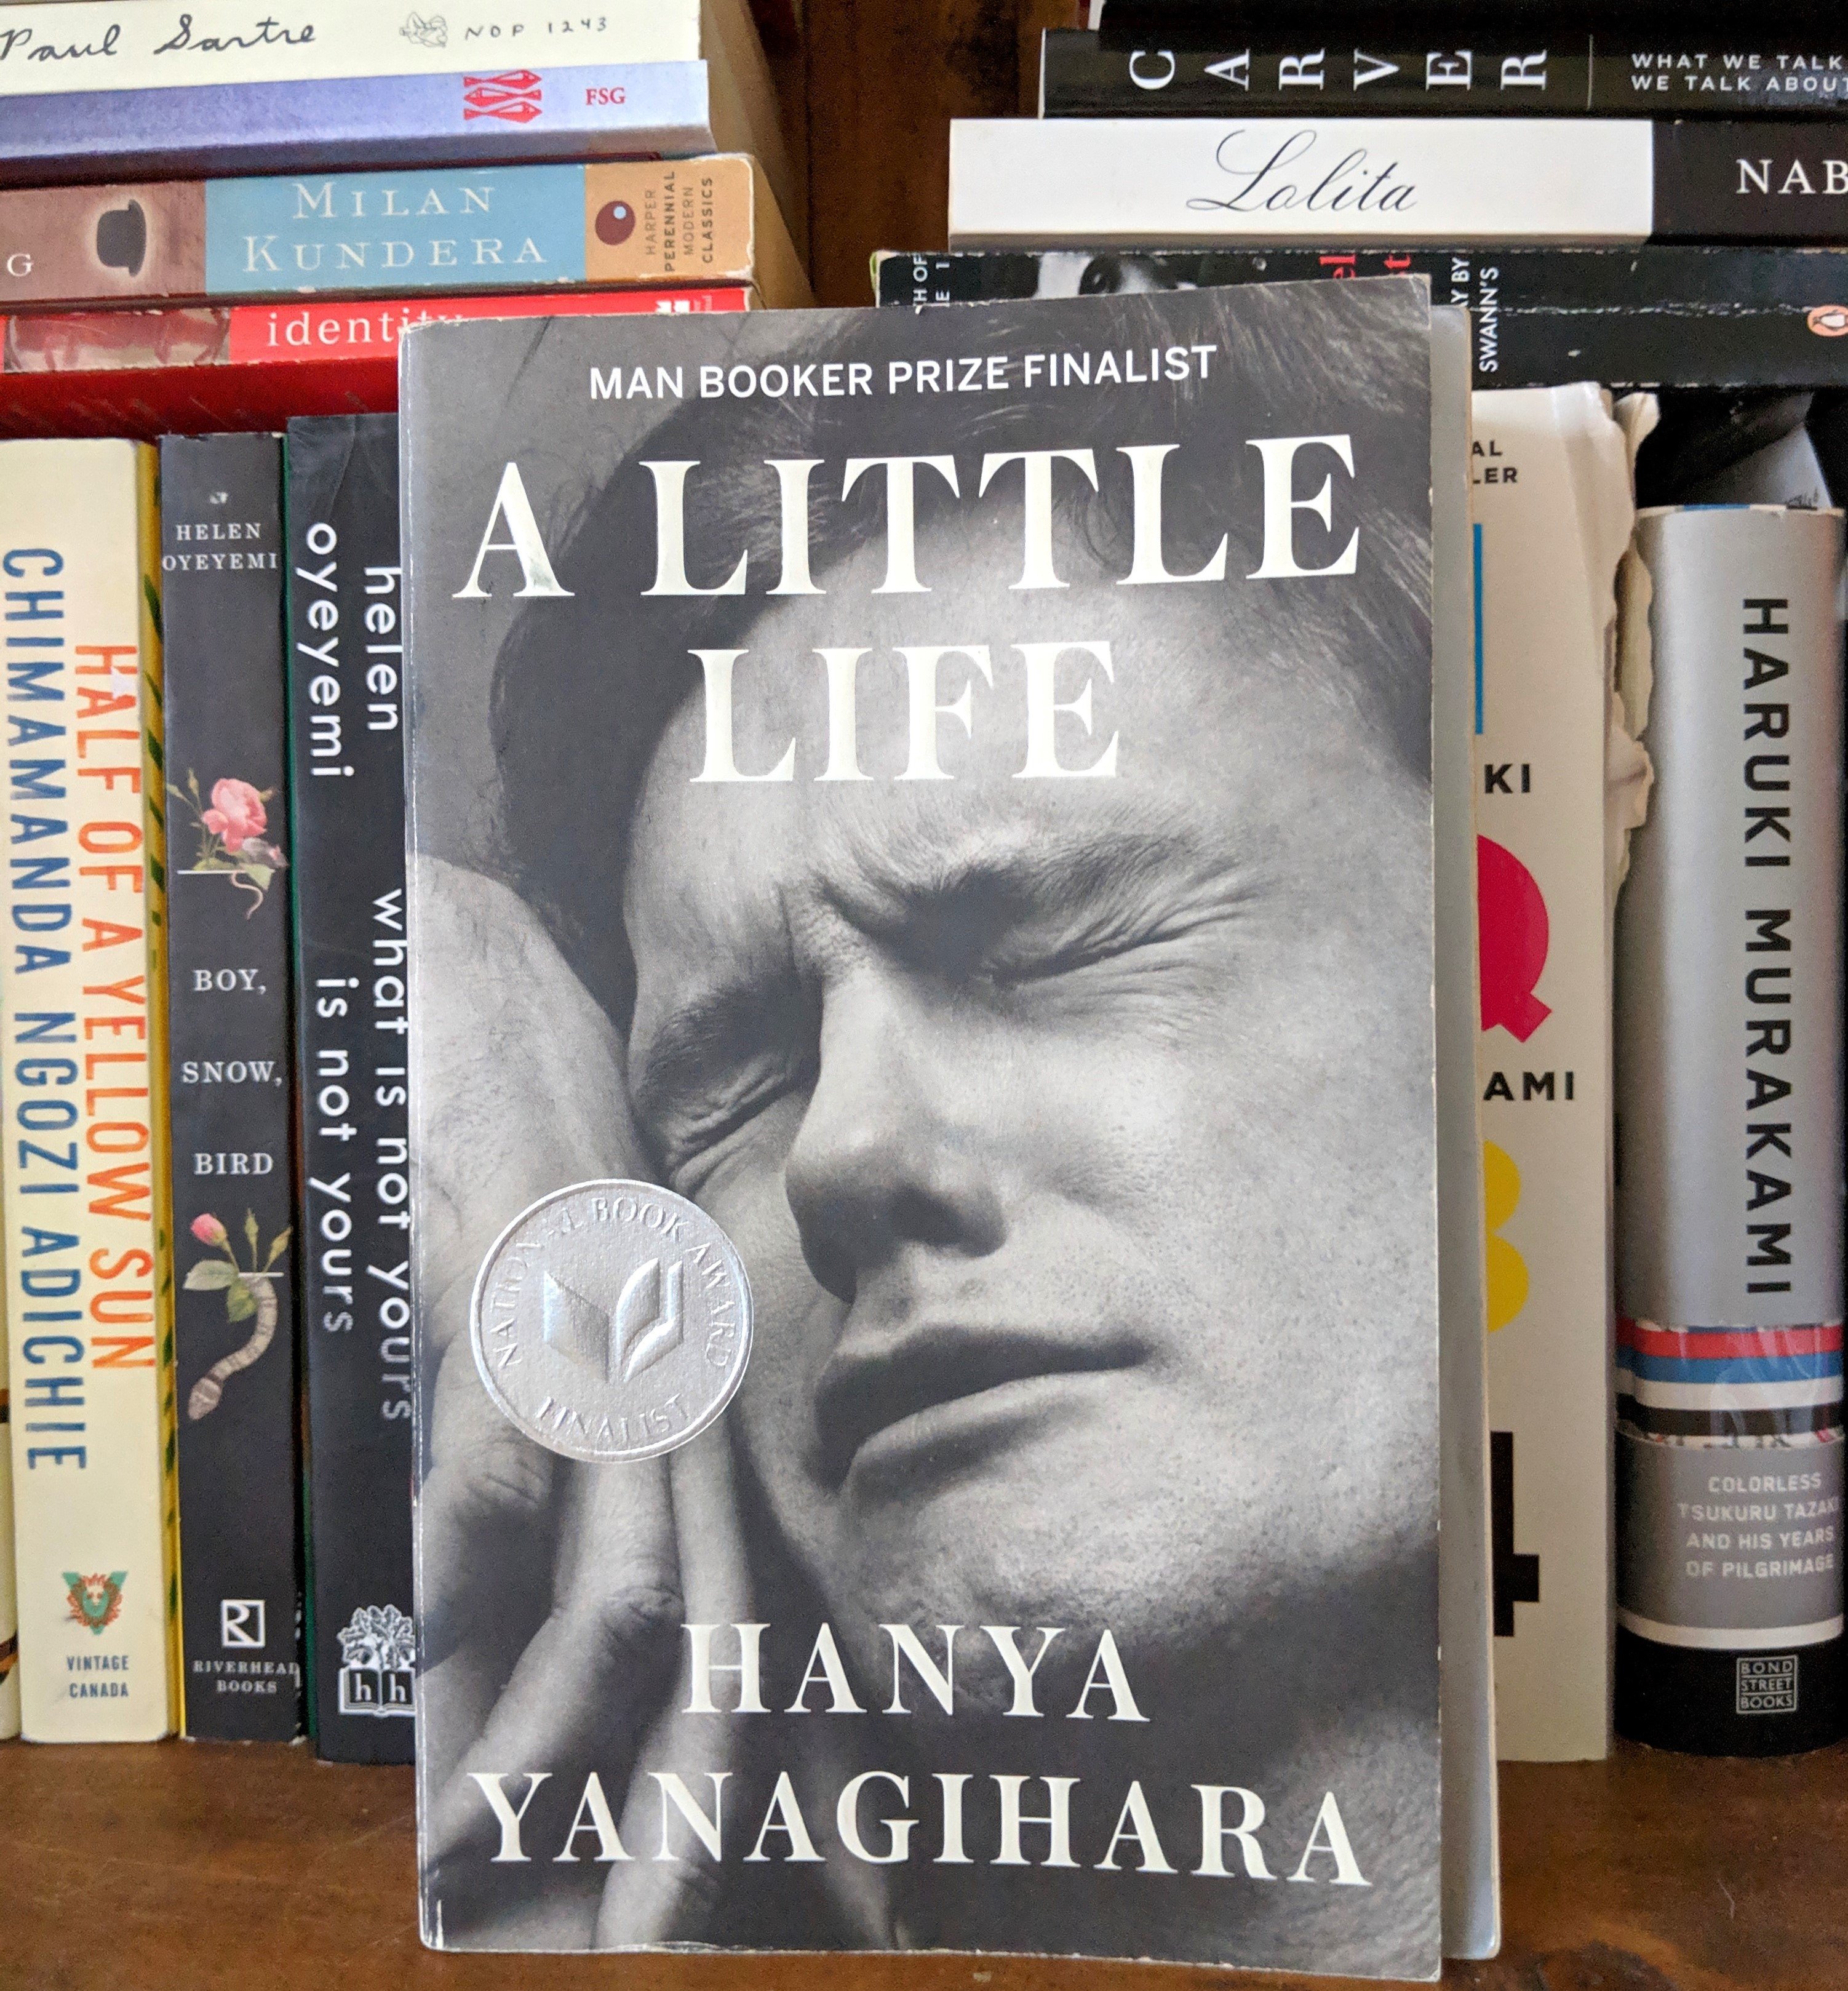 A little Life Cover. The little Life hanya Yanagihara обложка. Жизнь как книга.